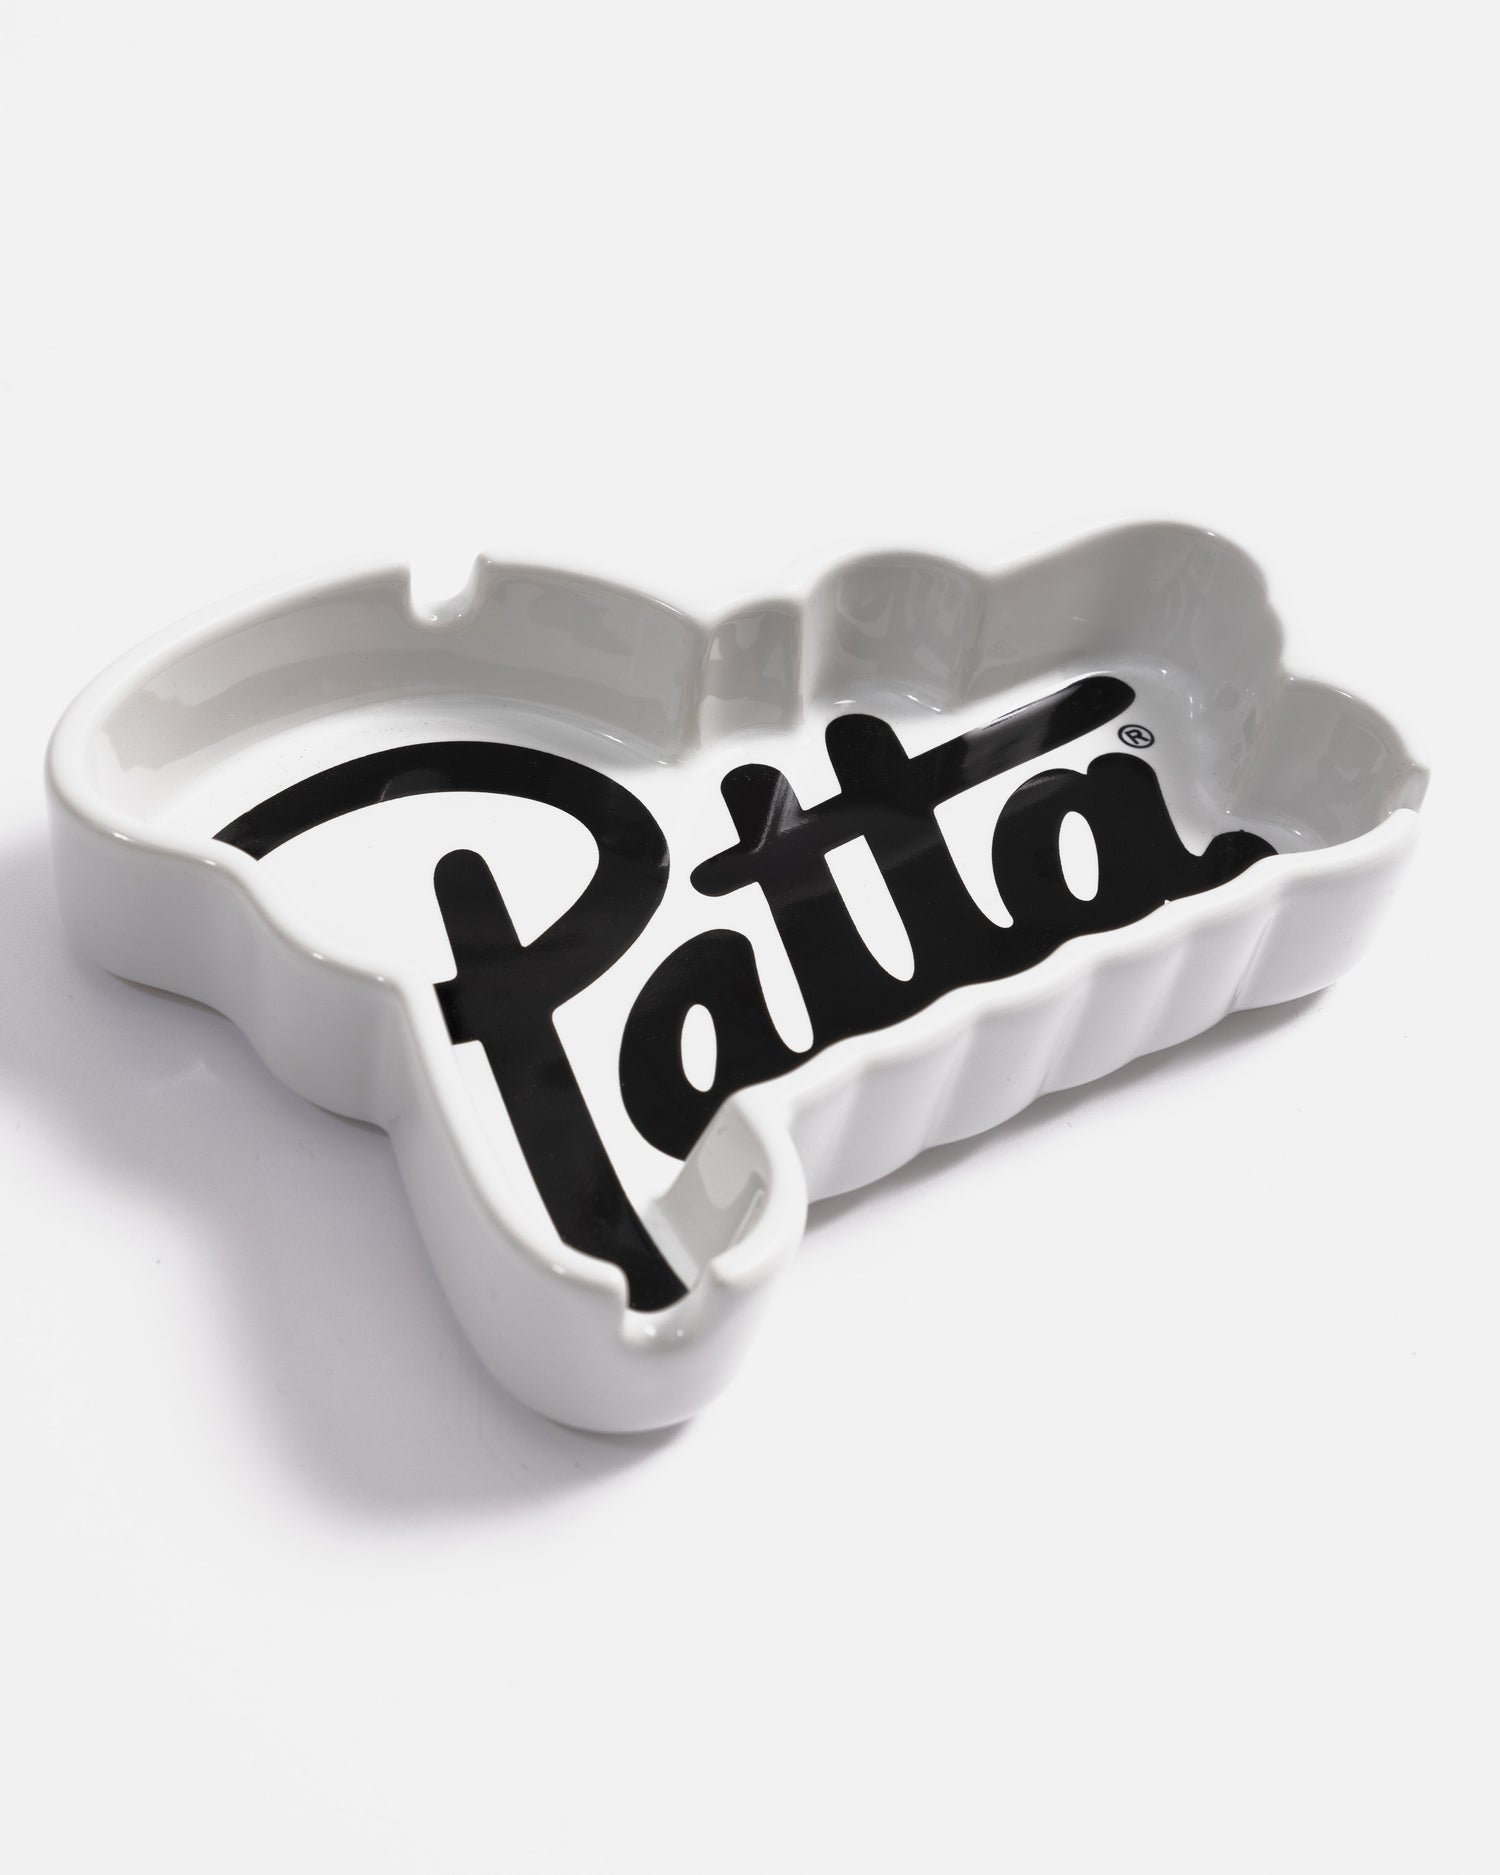 Patta Script Logo Shaped Ashtray (White/Black)